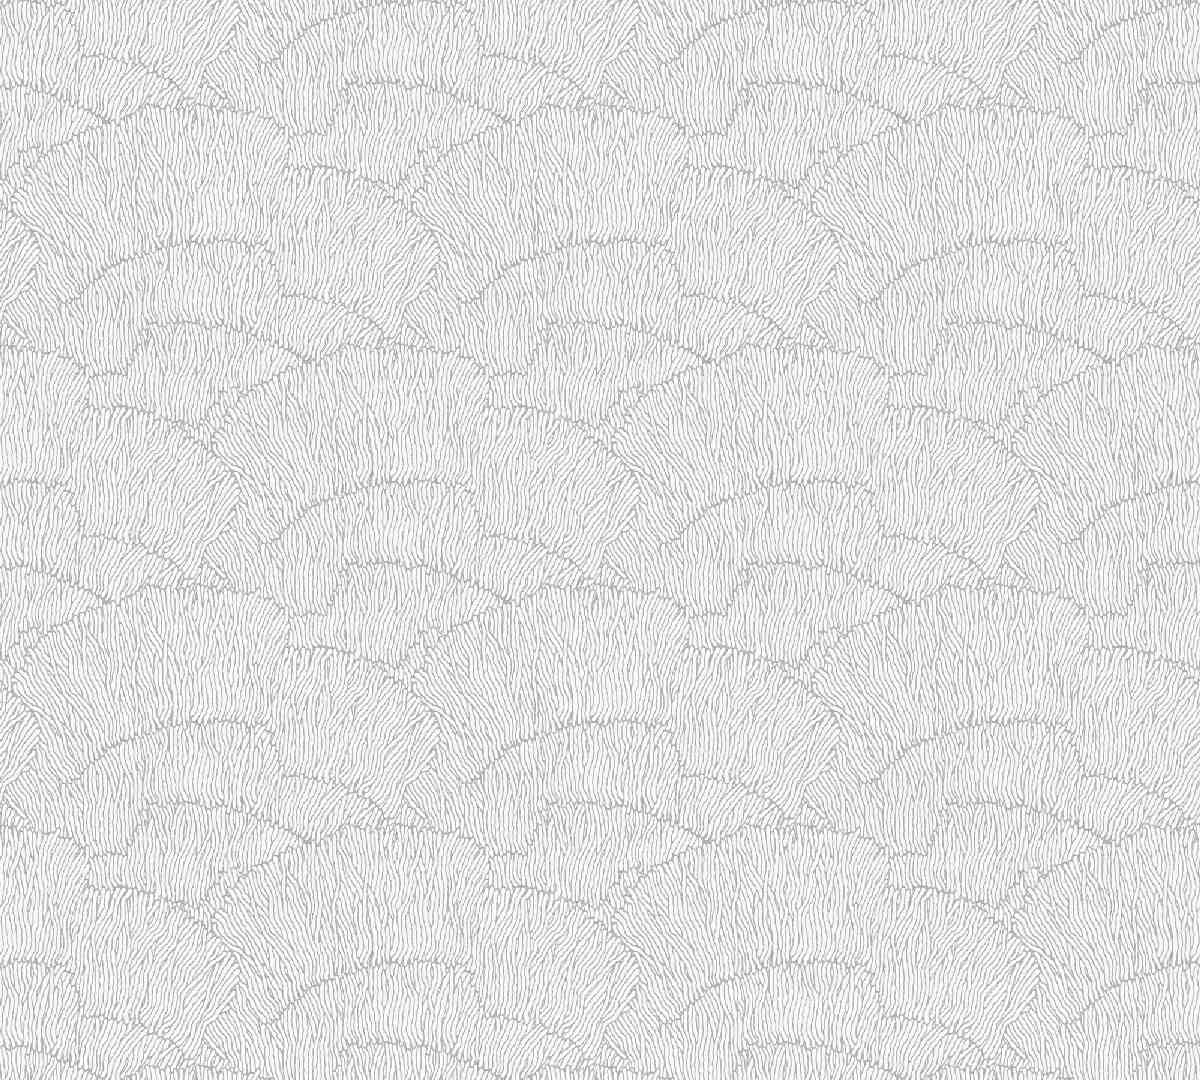 Vliestapete AP Arcade 391745 - Strukturtapete Muster - Silber, Weiß